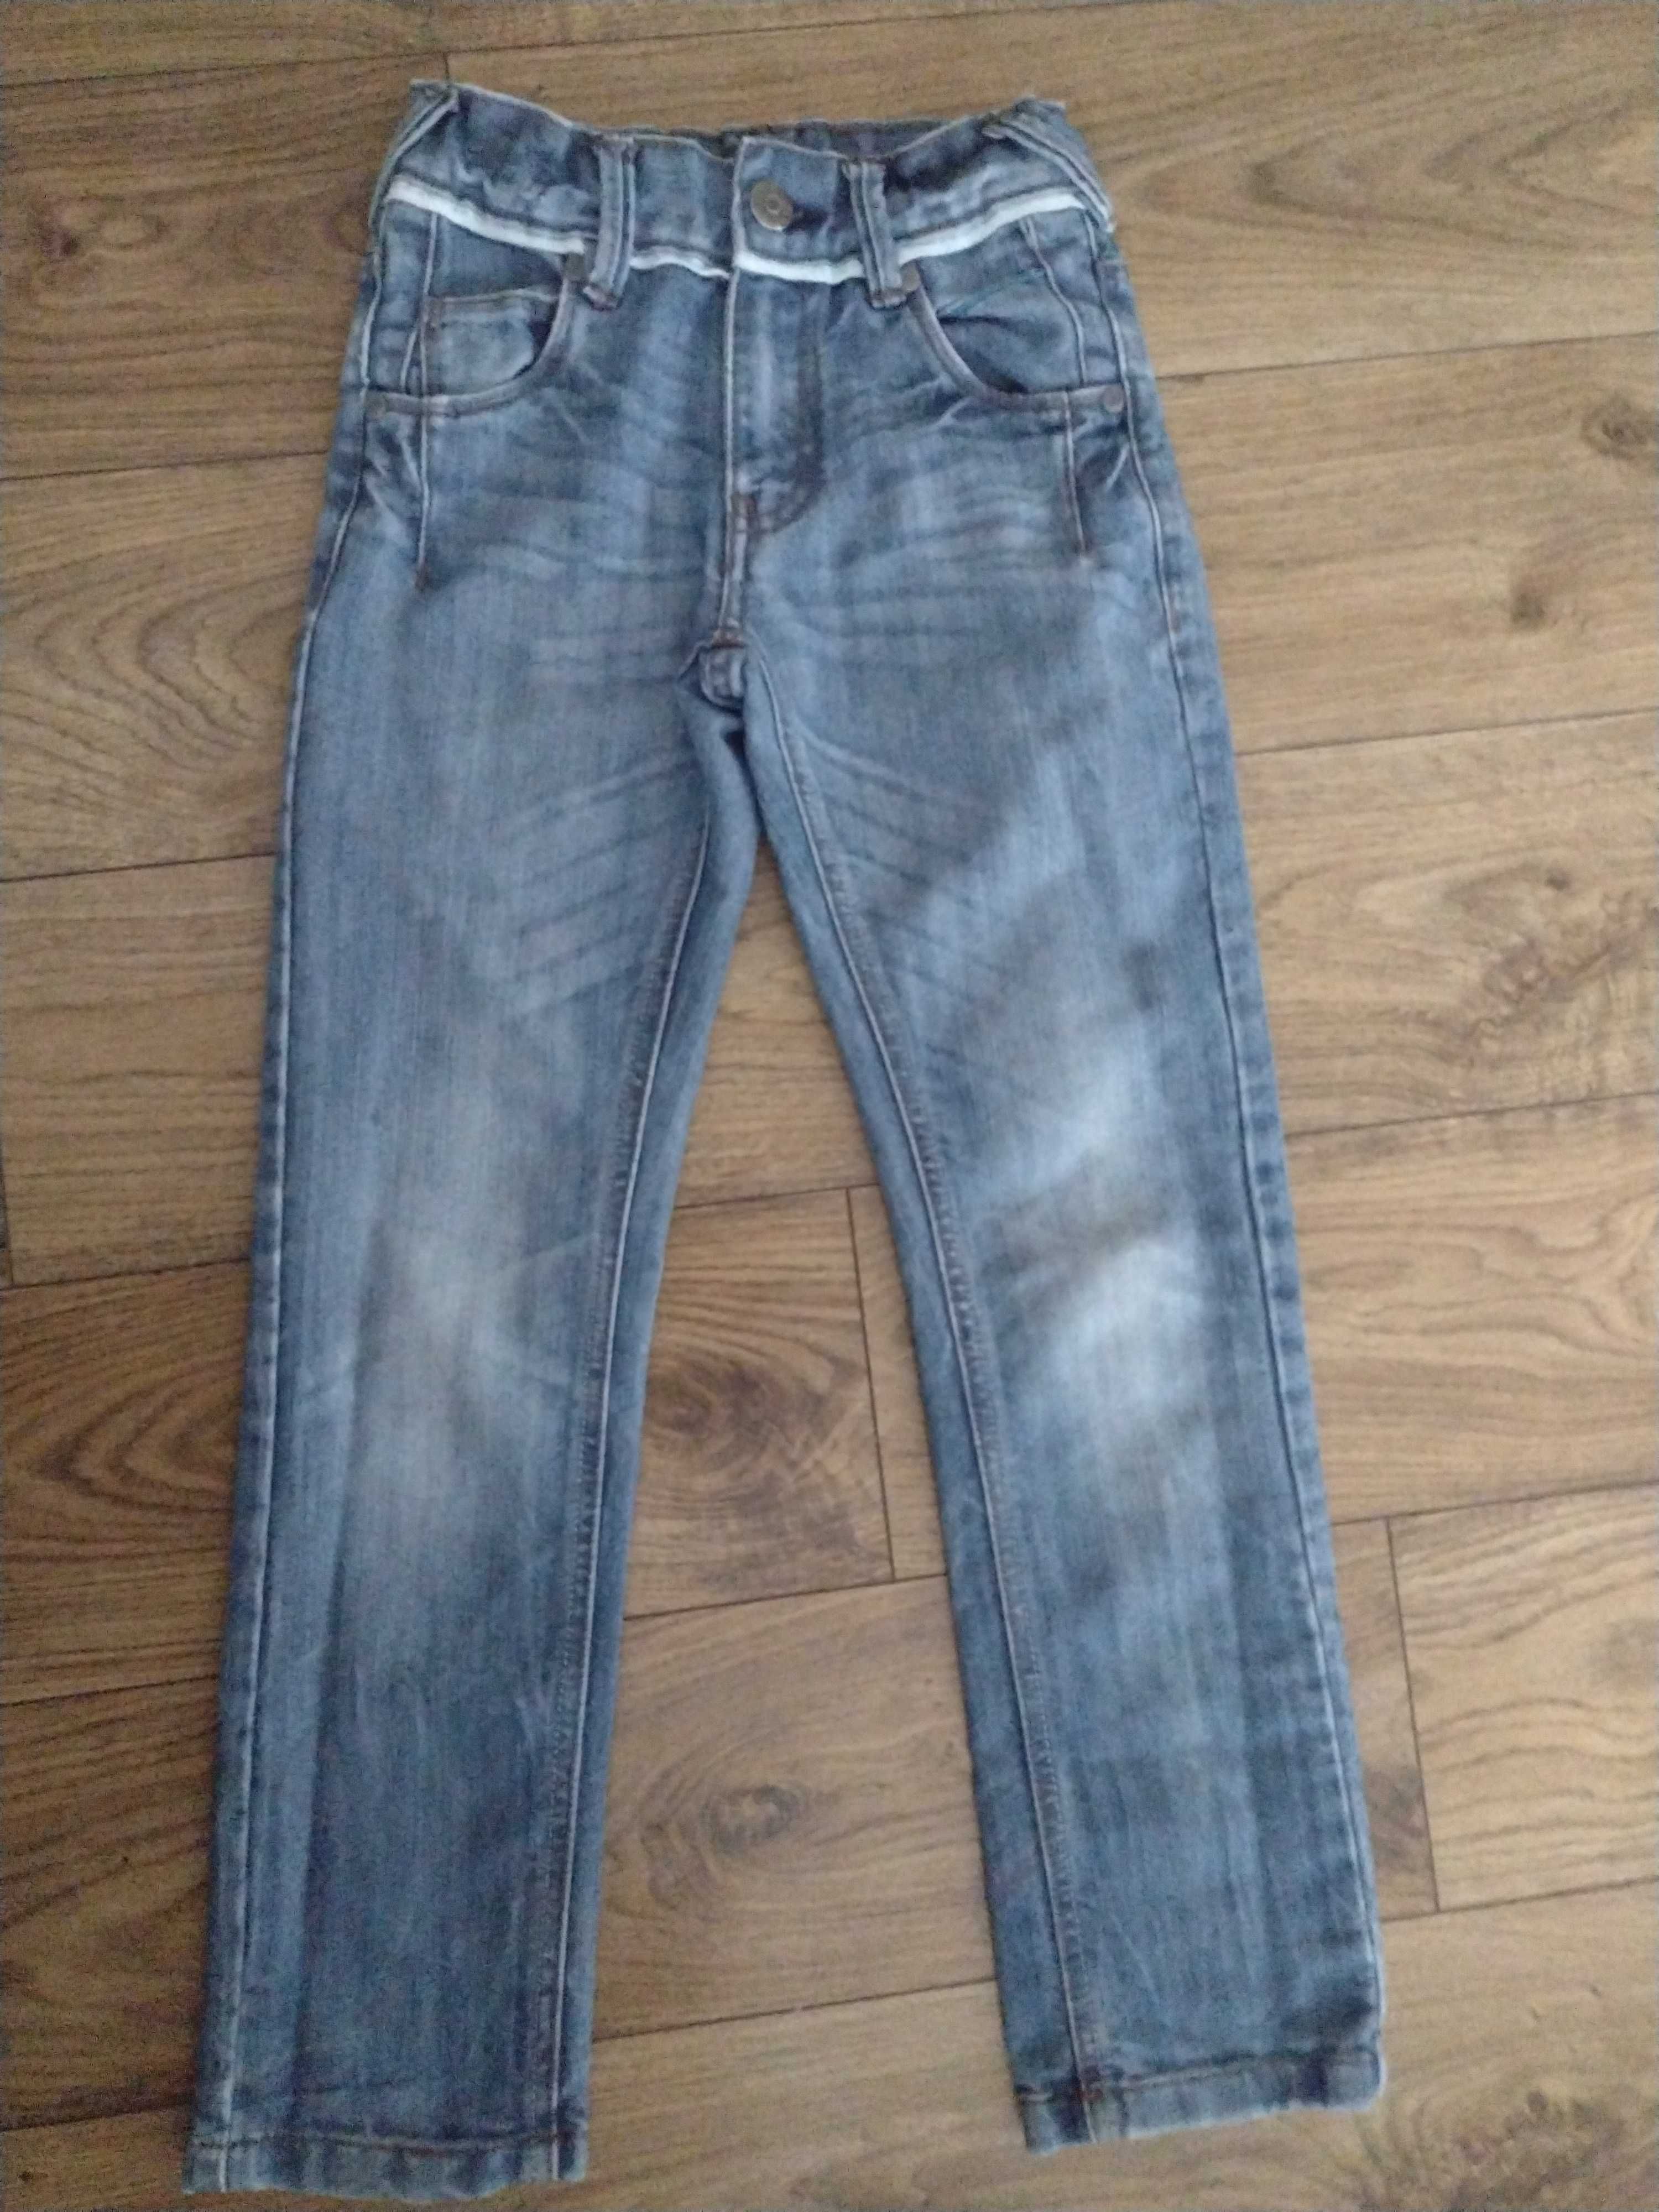 Spodnie, jeans 134. , jasne, stan bdb